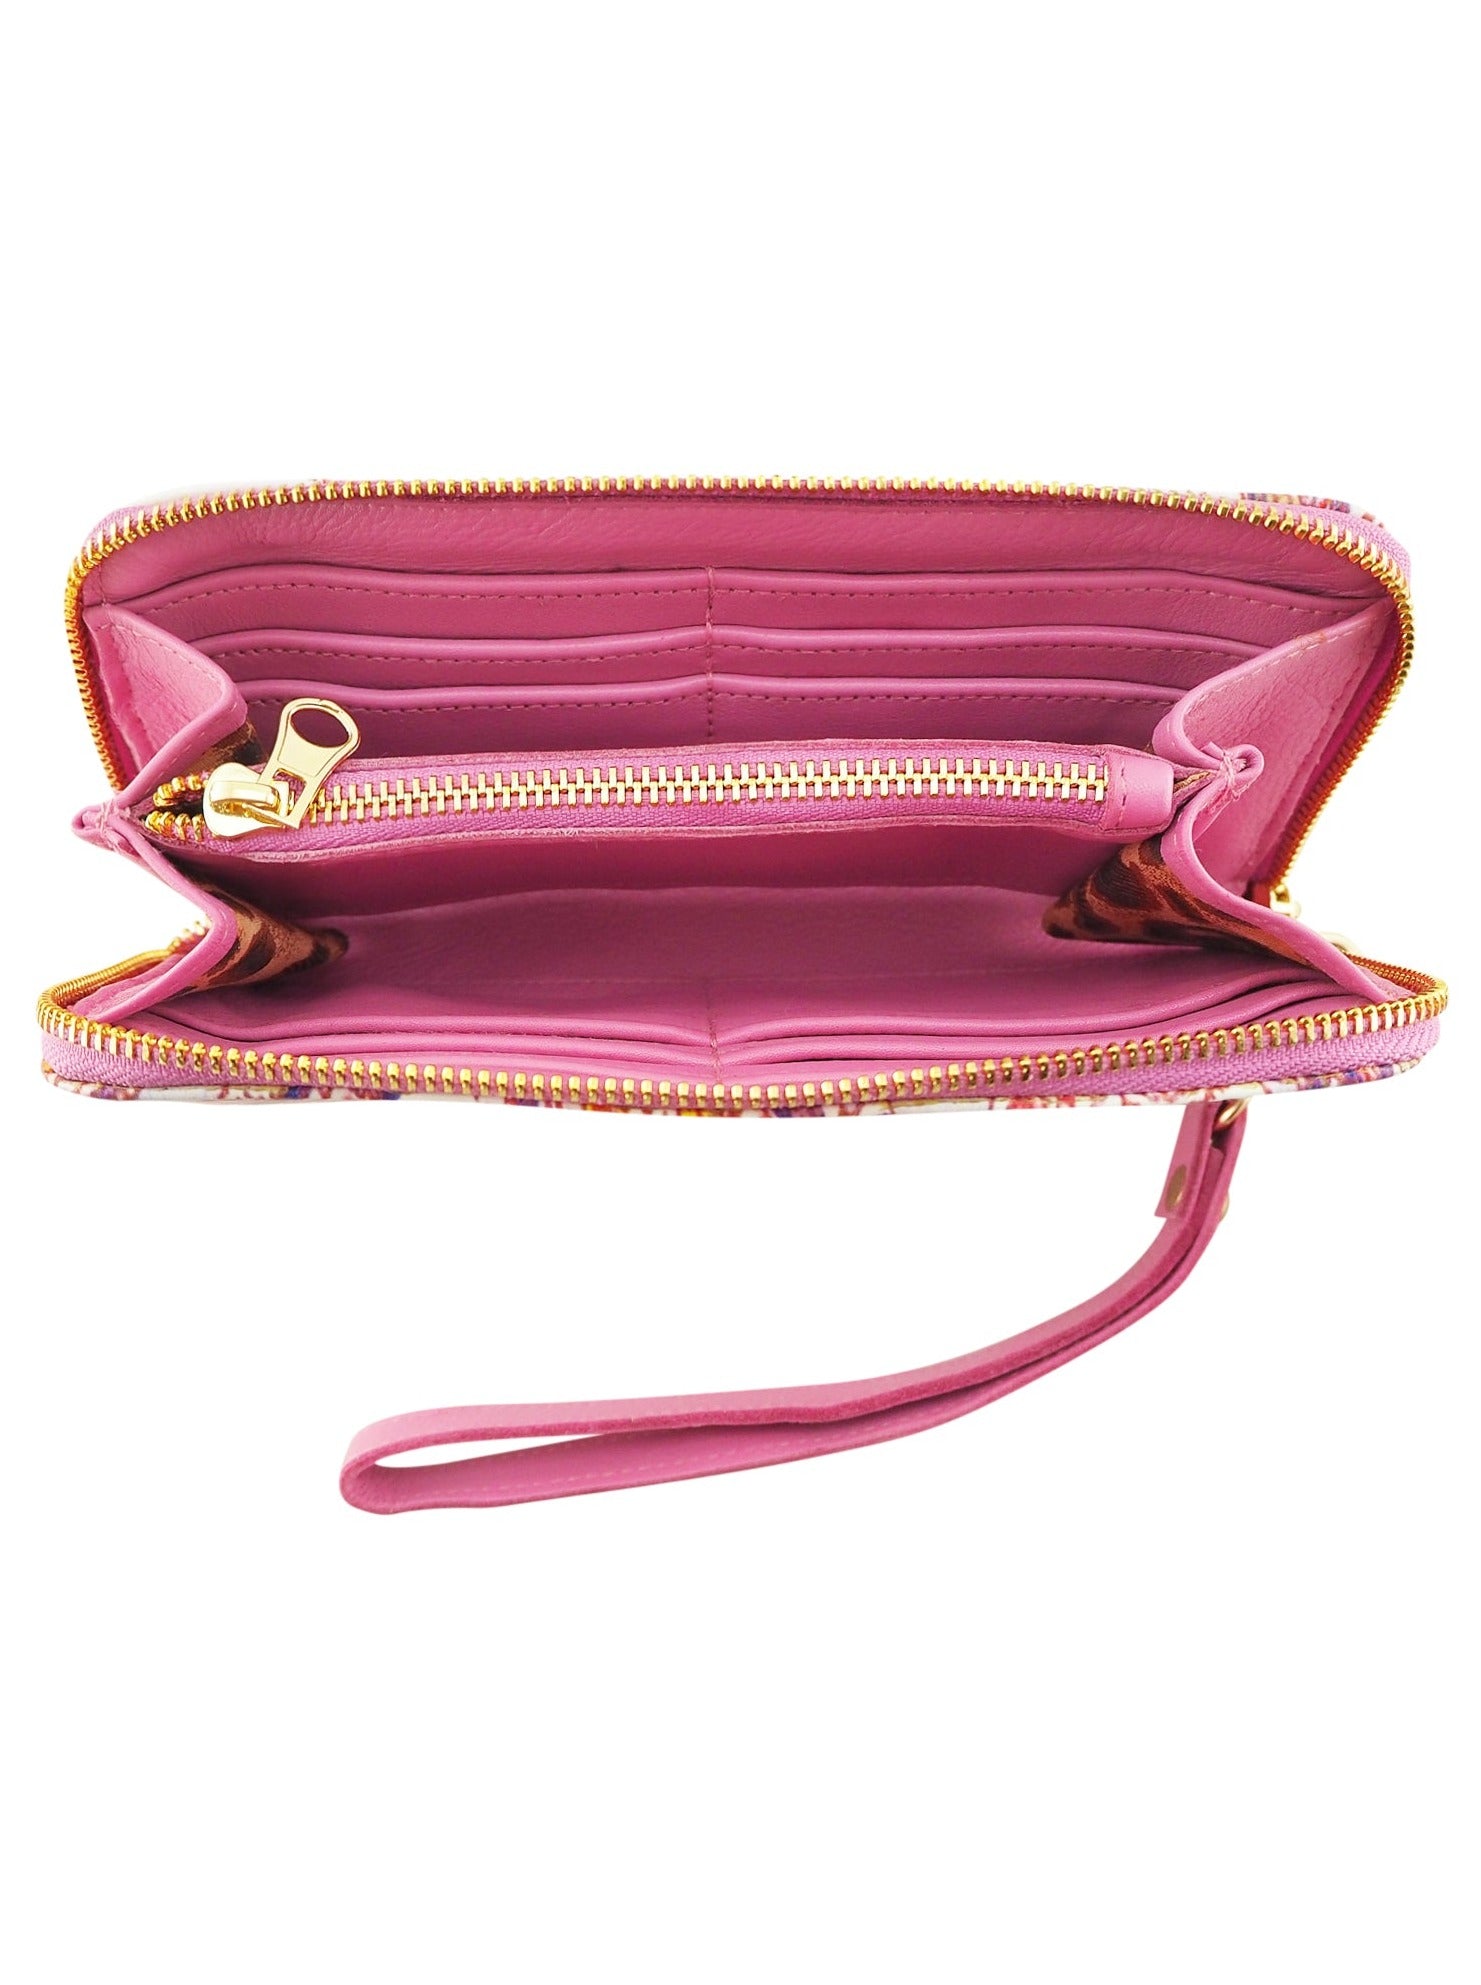 Bella Printed Wallet | Paisley/Fuchsia-Handbag & Wallet Accessories-CadelleLeather